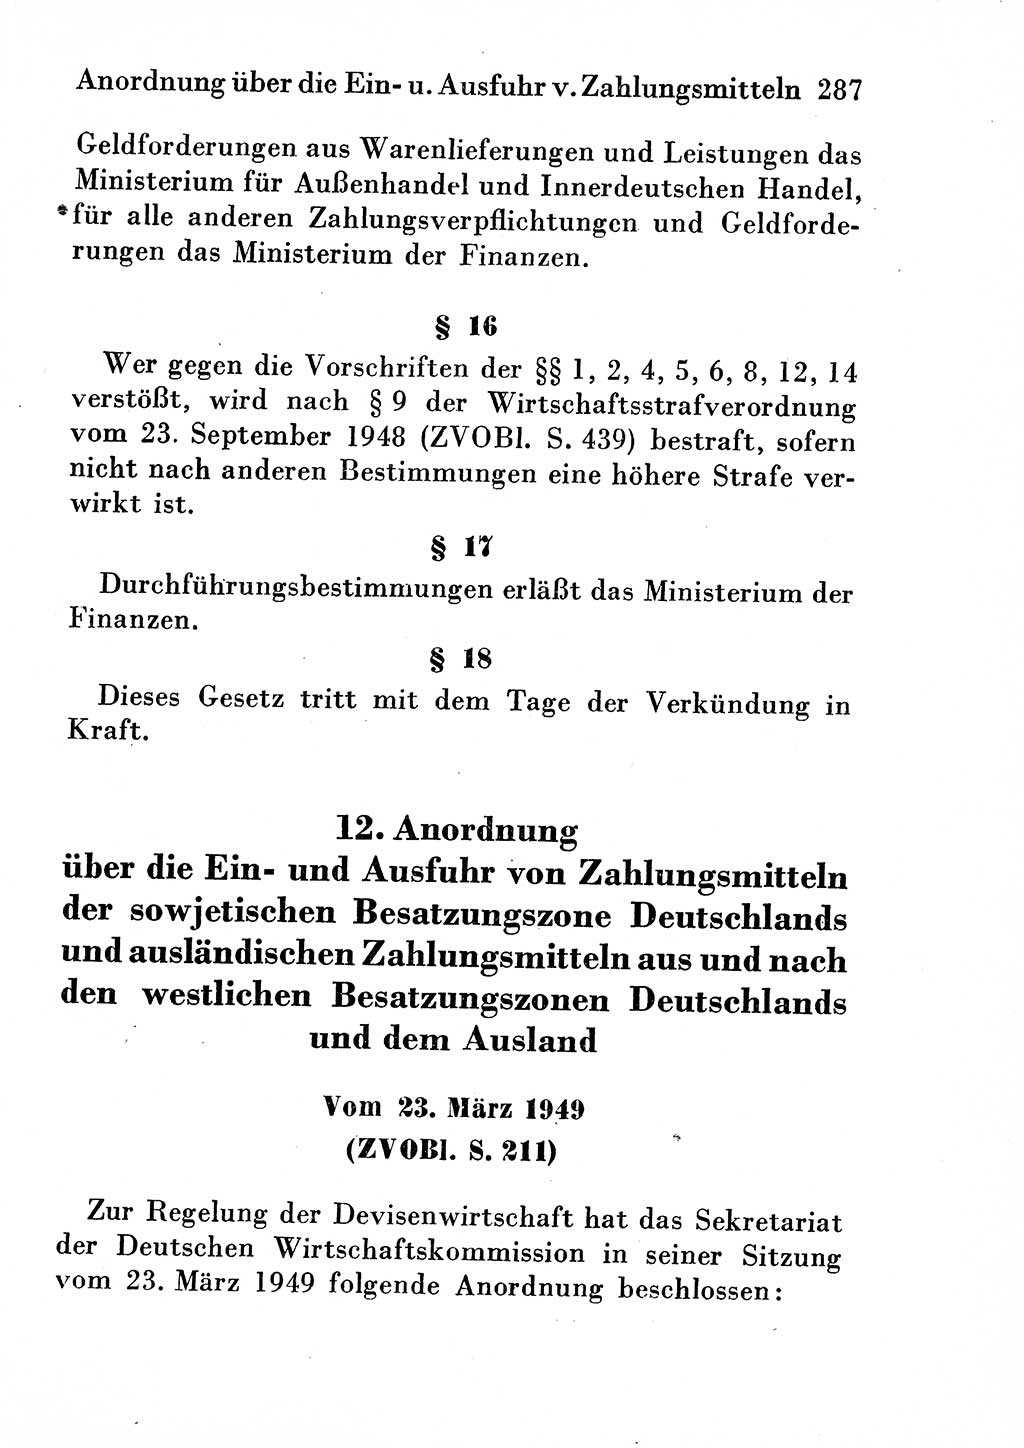 Strafgesetzbuch (StGB) und andere Strafgesetze [Deutsche Demokratische Republik (DDR)] 1954, Seite 287 (StGB Strafges. DDR 1954, S. 287)